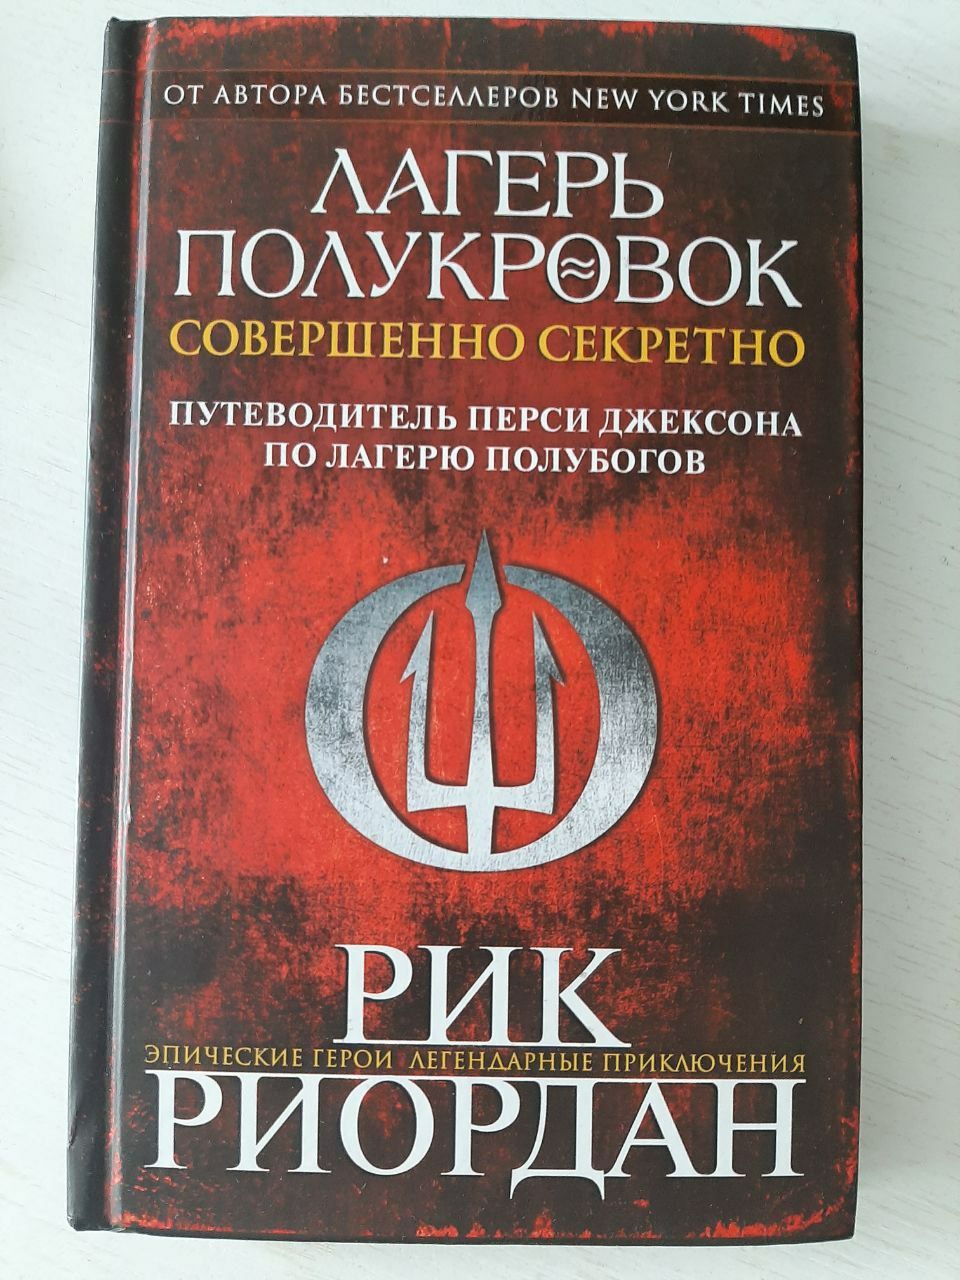 Книга "Лагерь Полукровок"